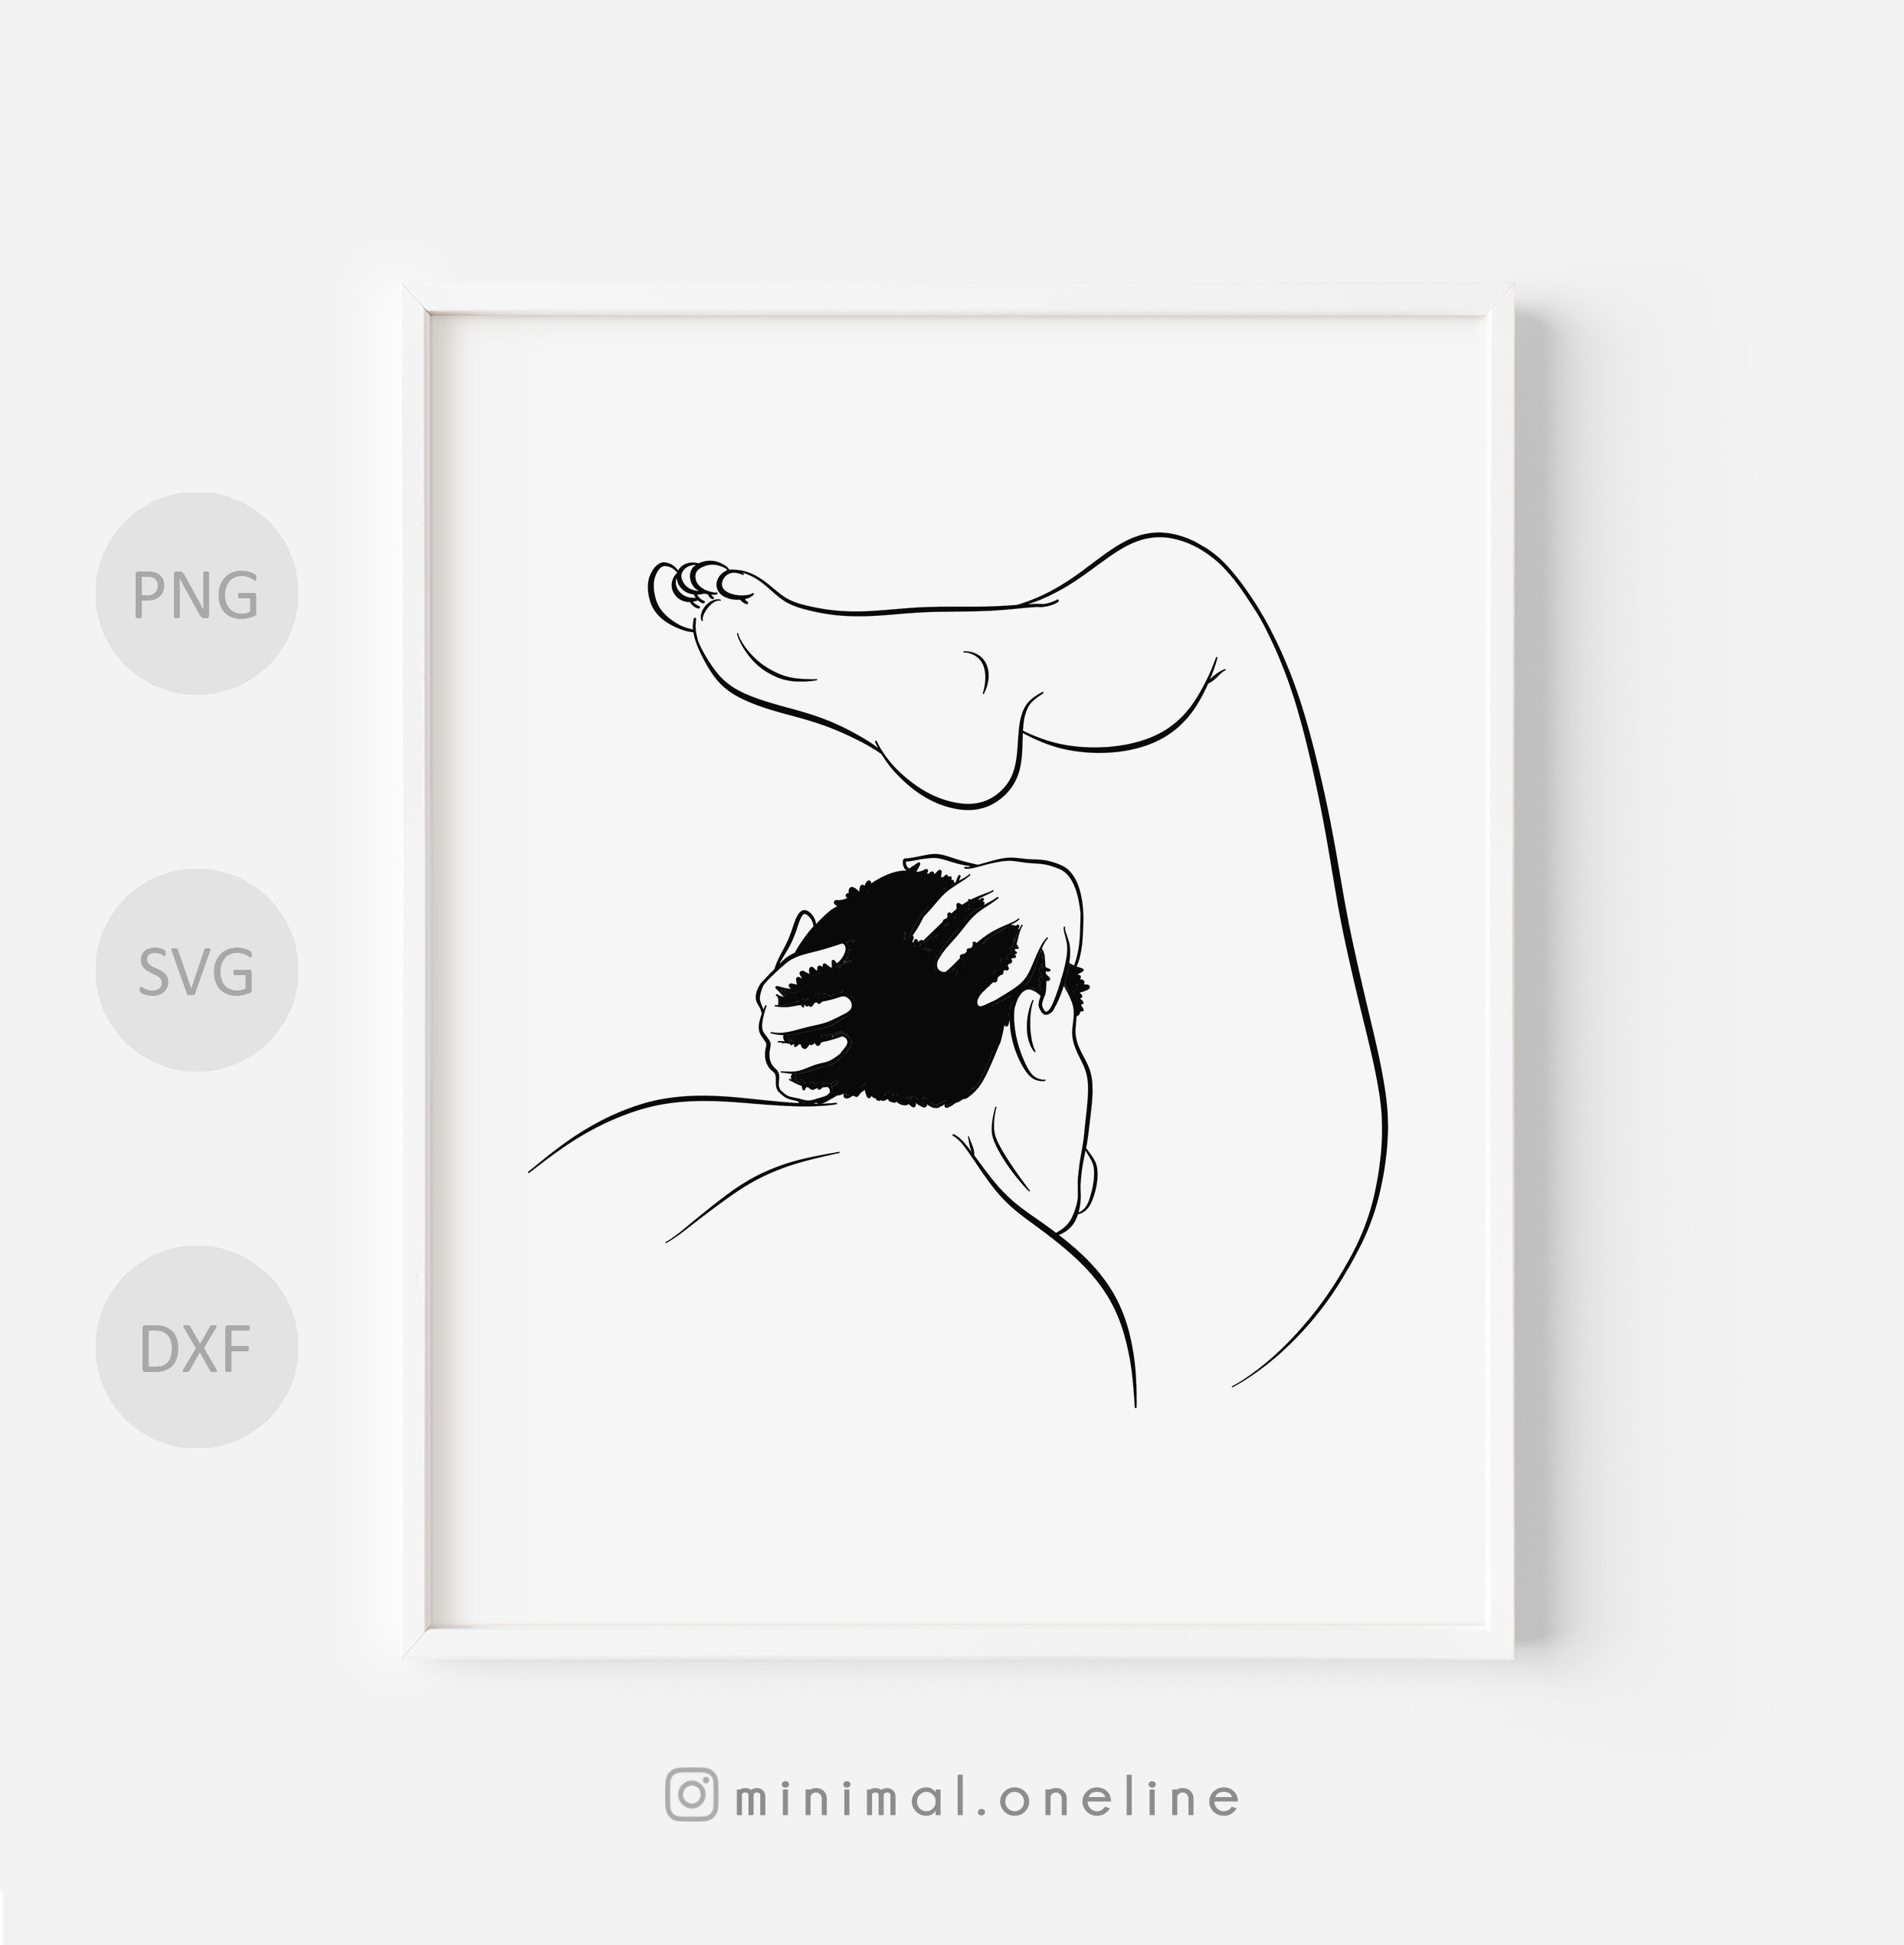 Oral sex drawings